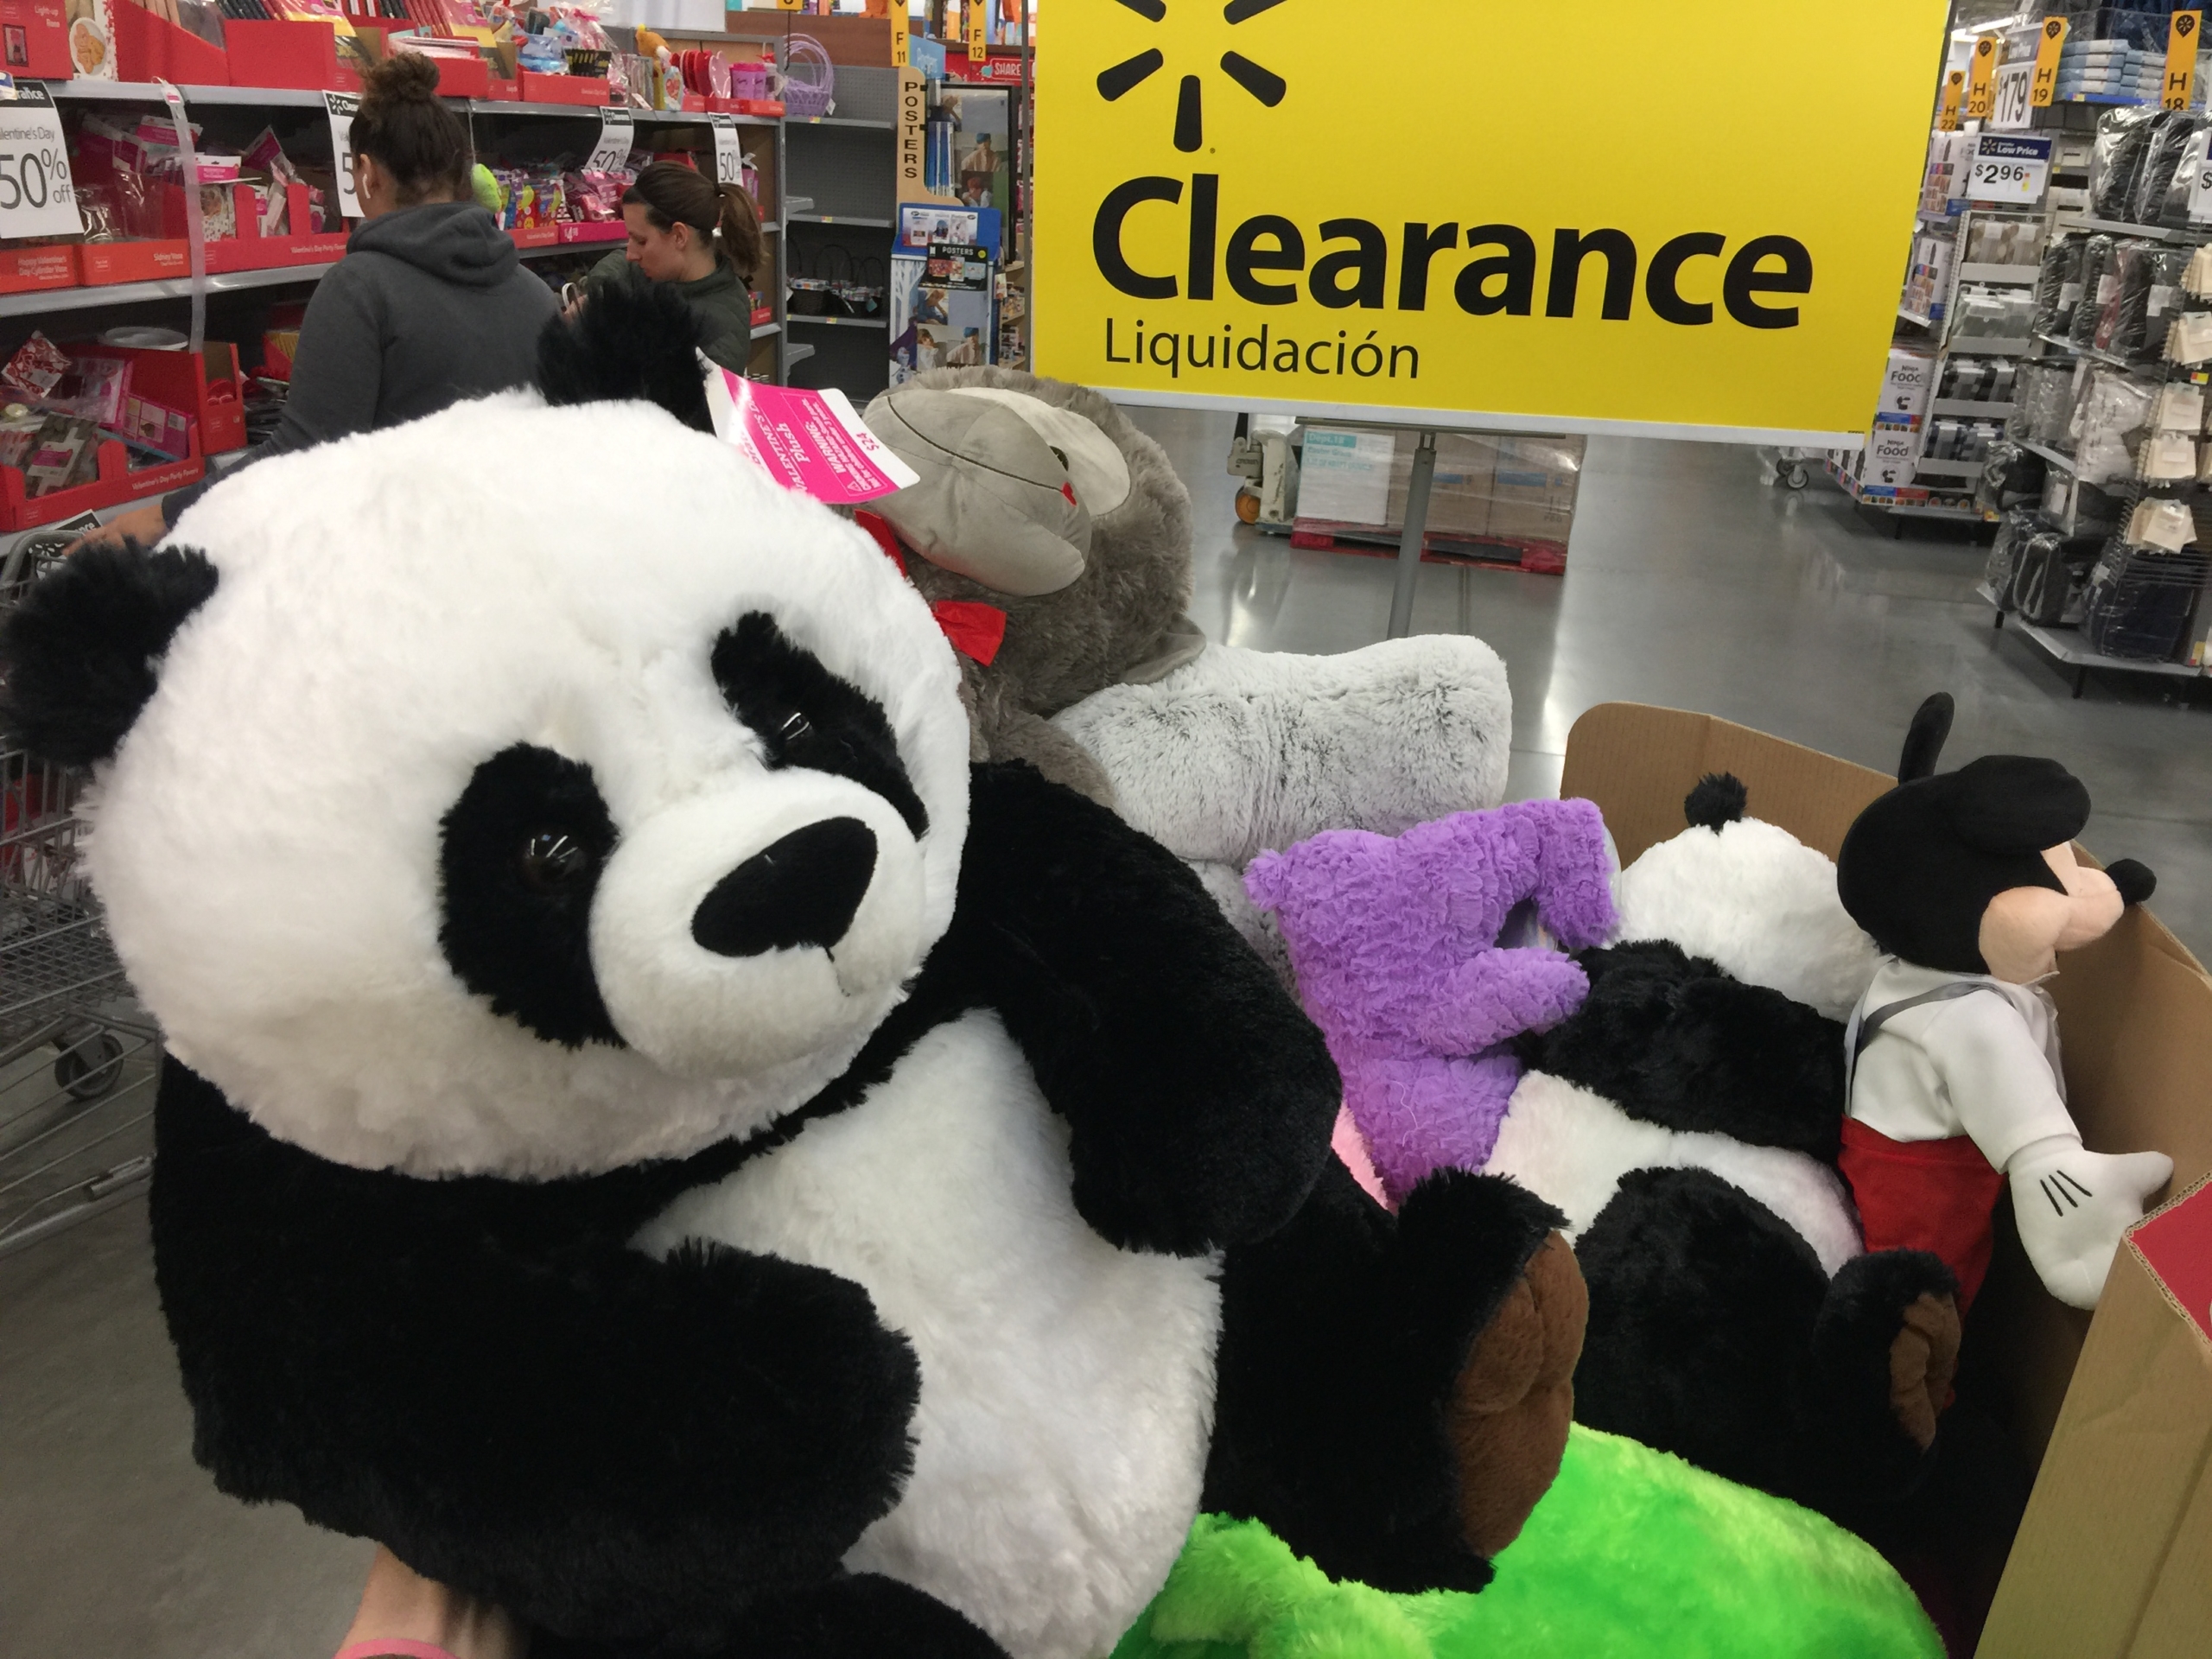 giant panda stuffed animal walmart